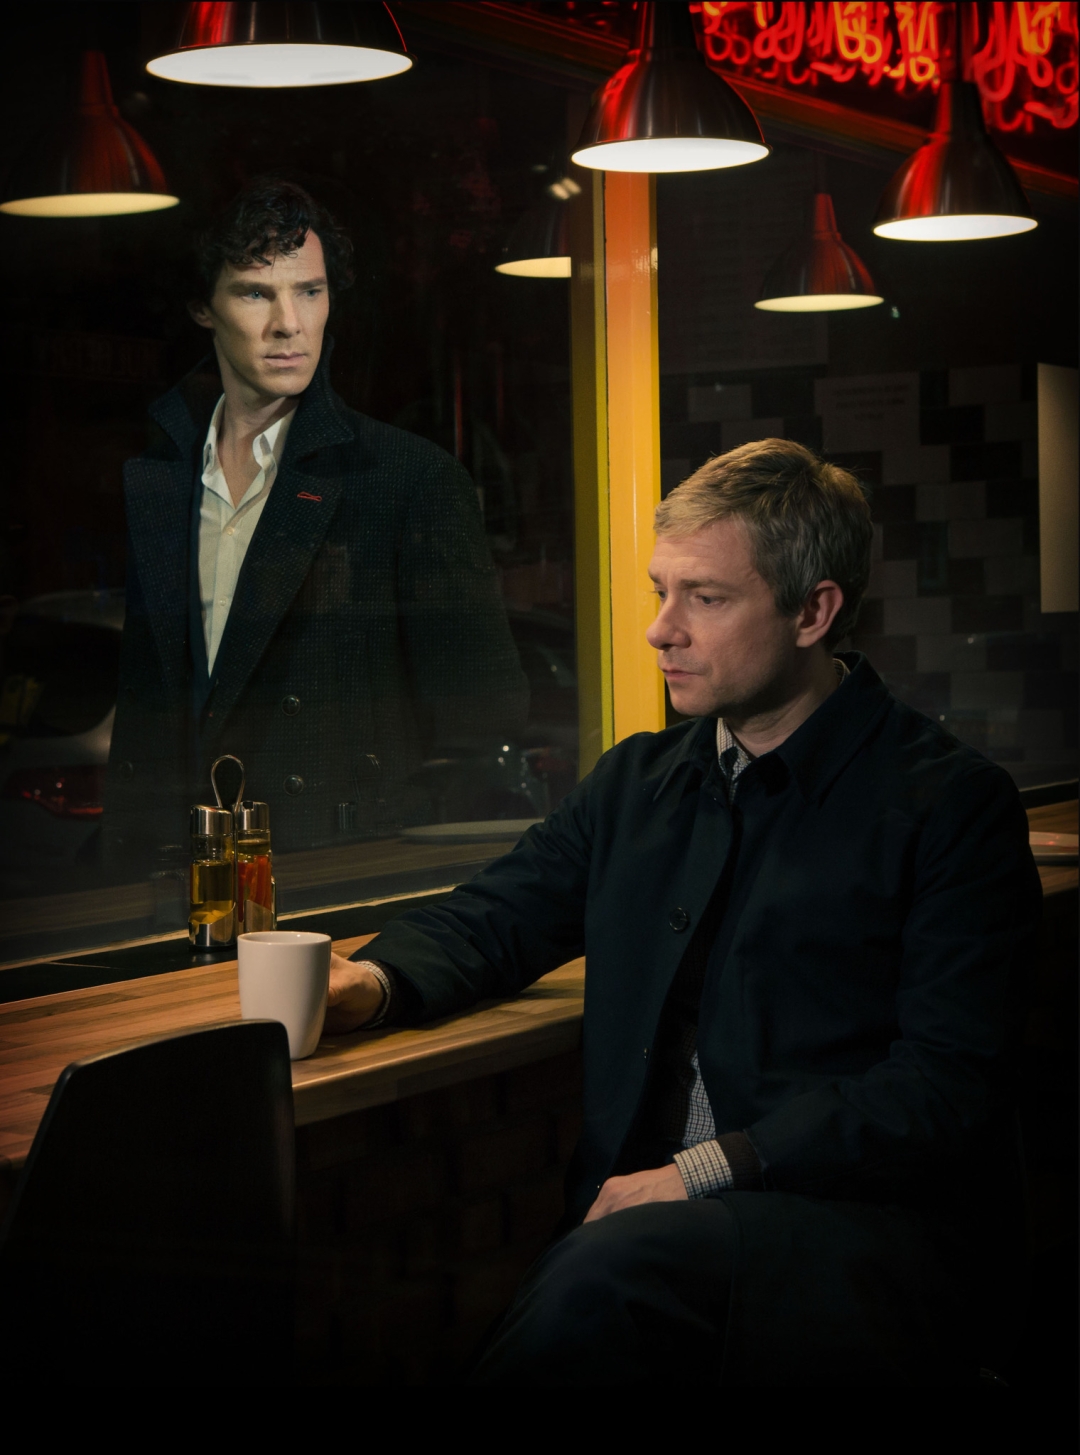 Stiže nova ekranizacija priče o Sherlocku Holmesu. Donosi nam zanimljiv novitet